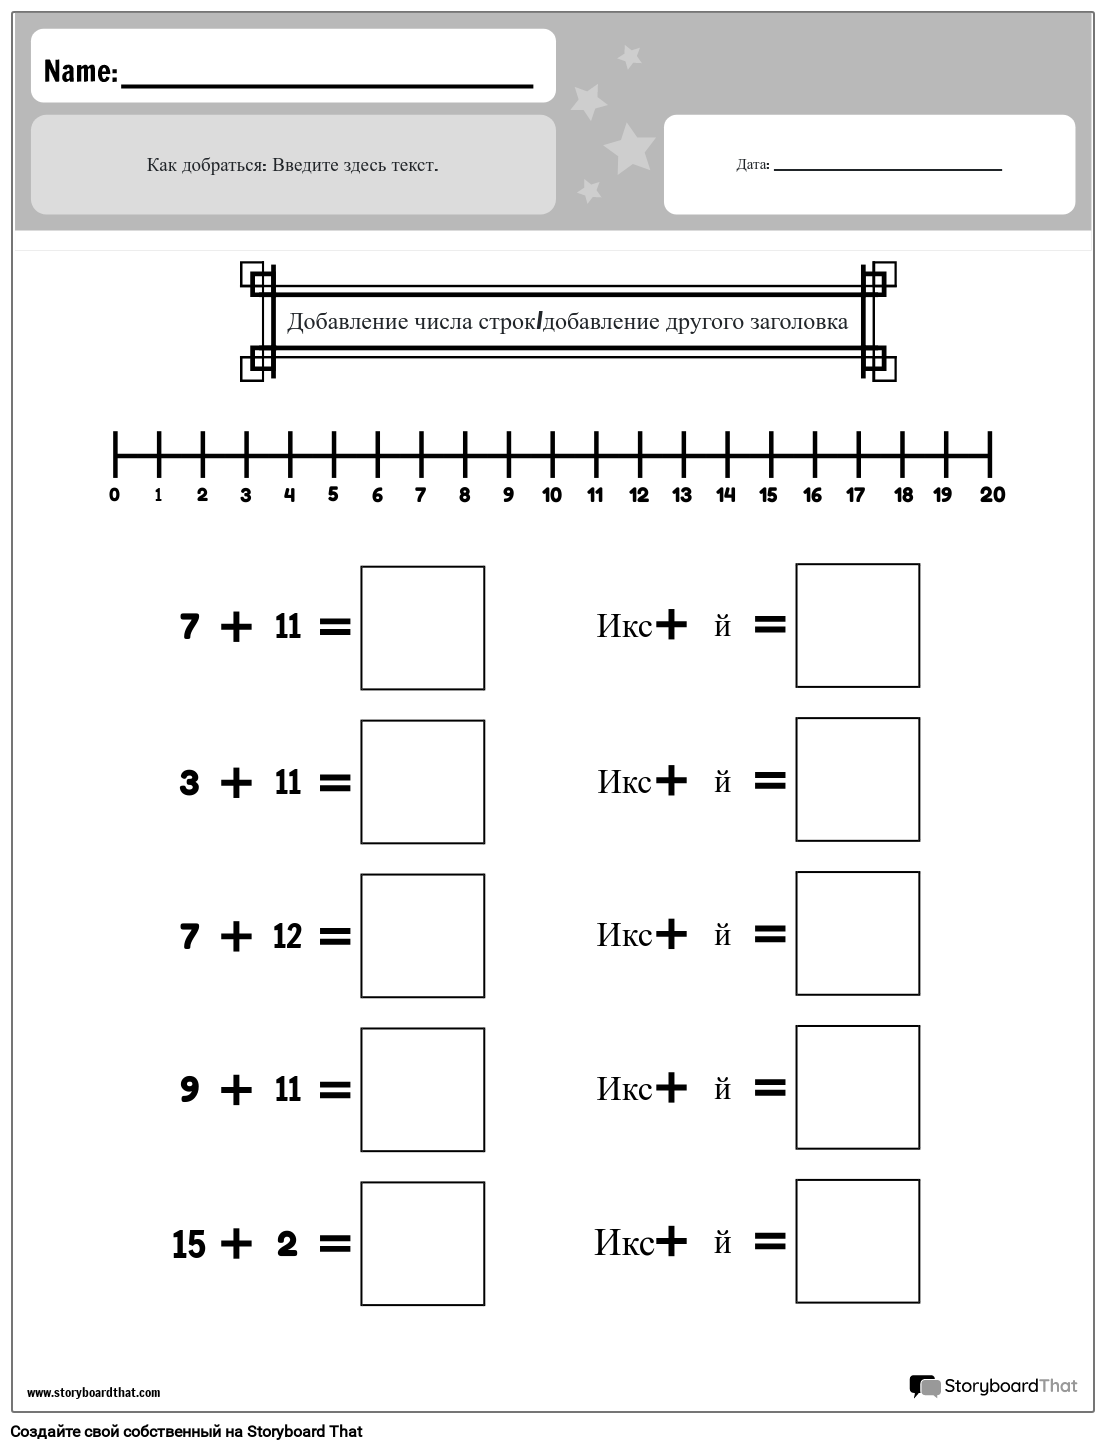 Рабочий лист сложения чисел (черно-белый)